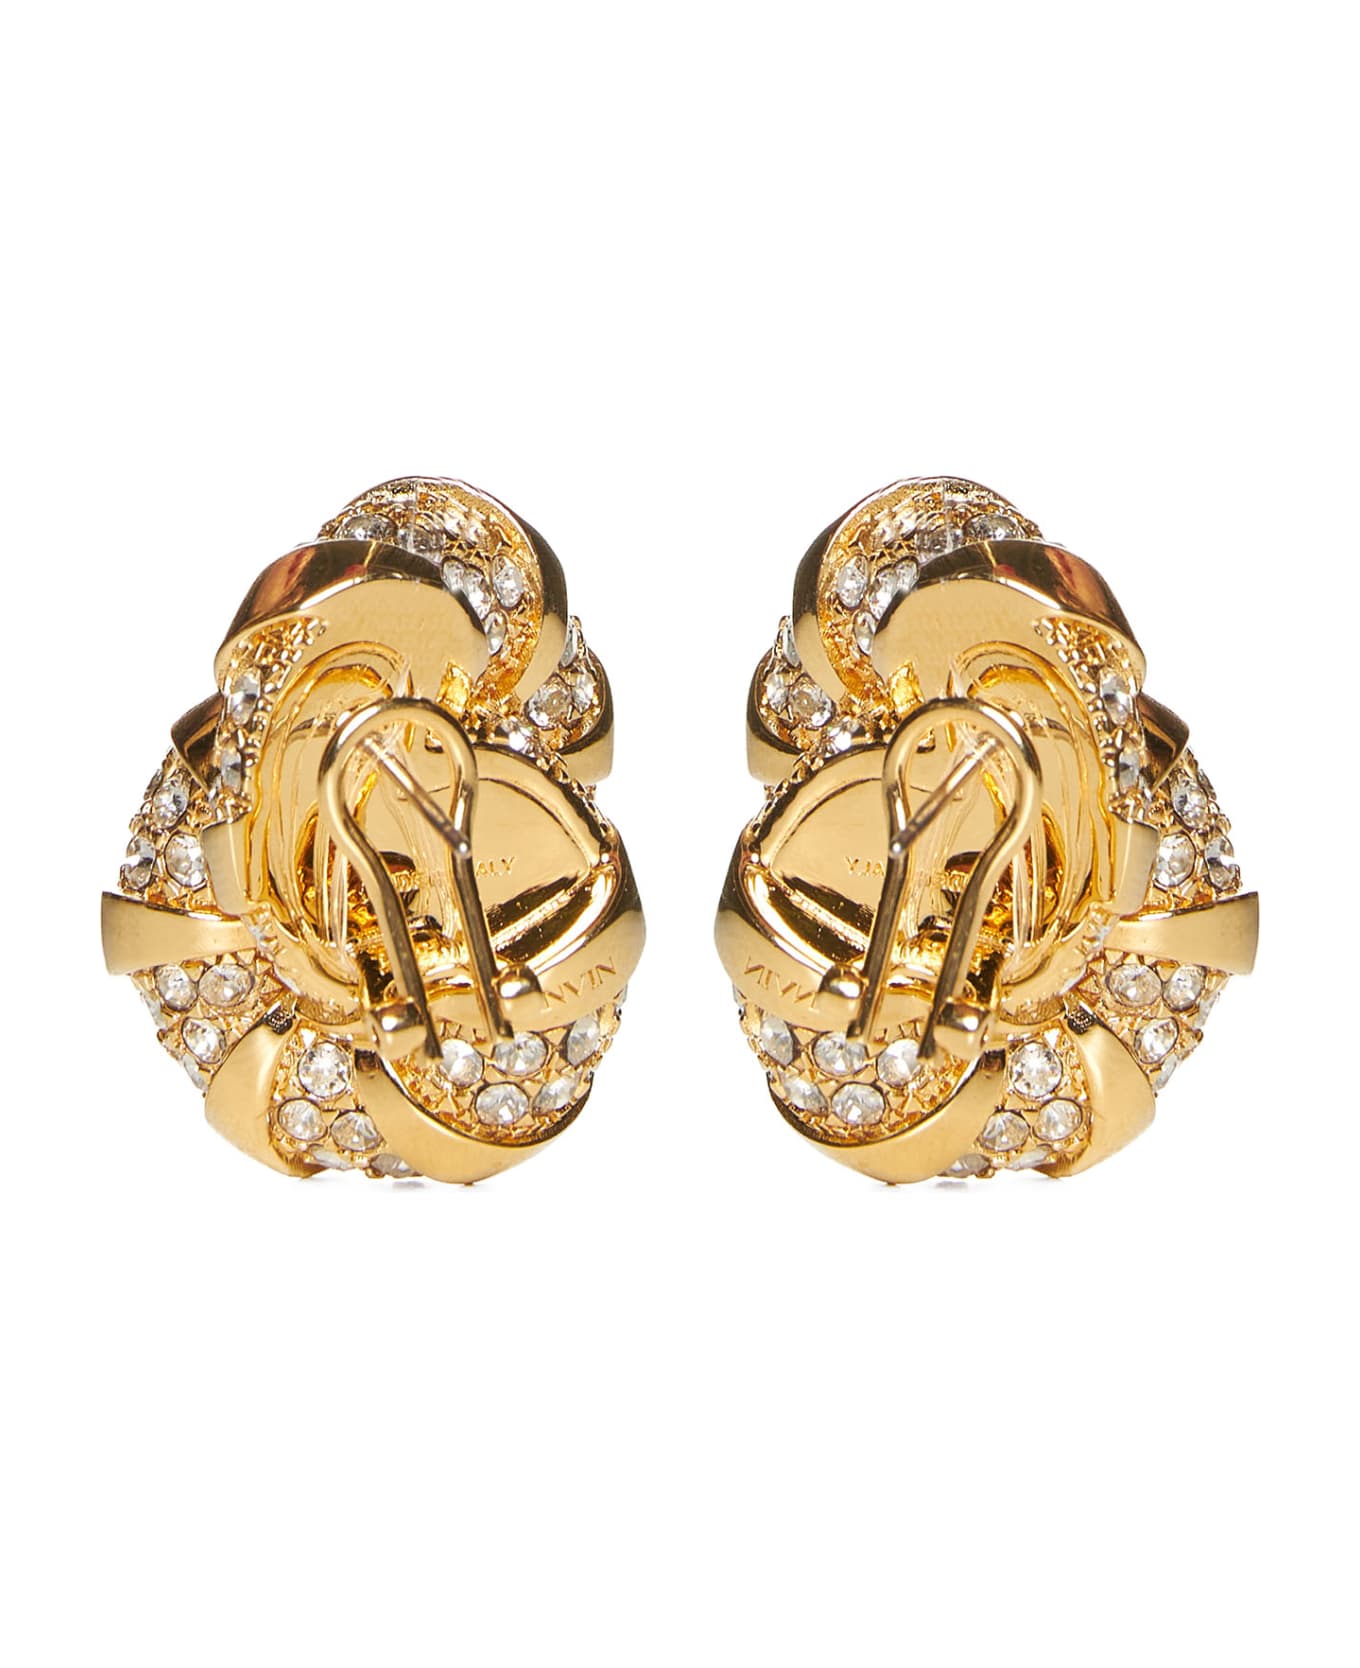 Lanvin Earrings - Gold crystal